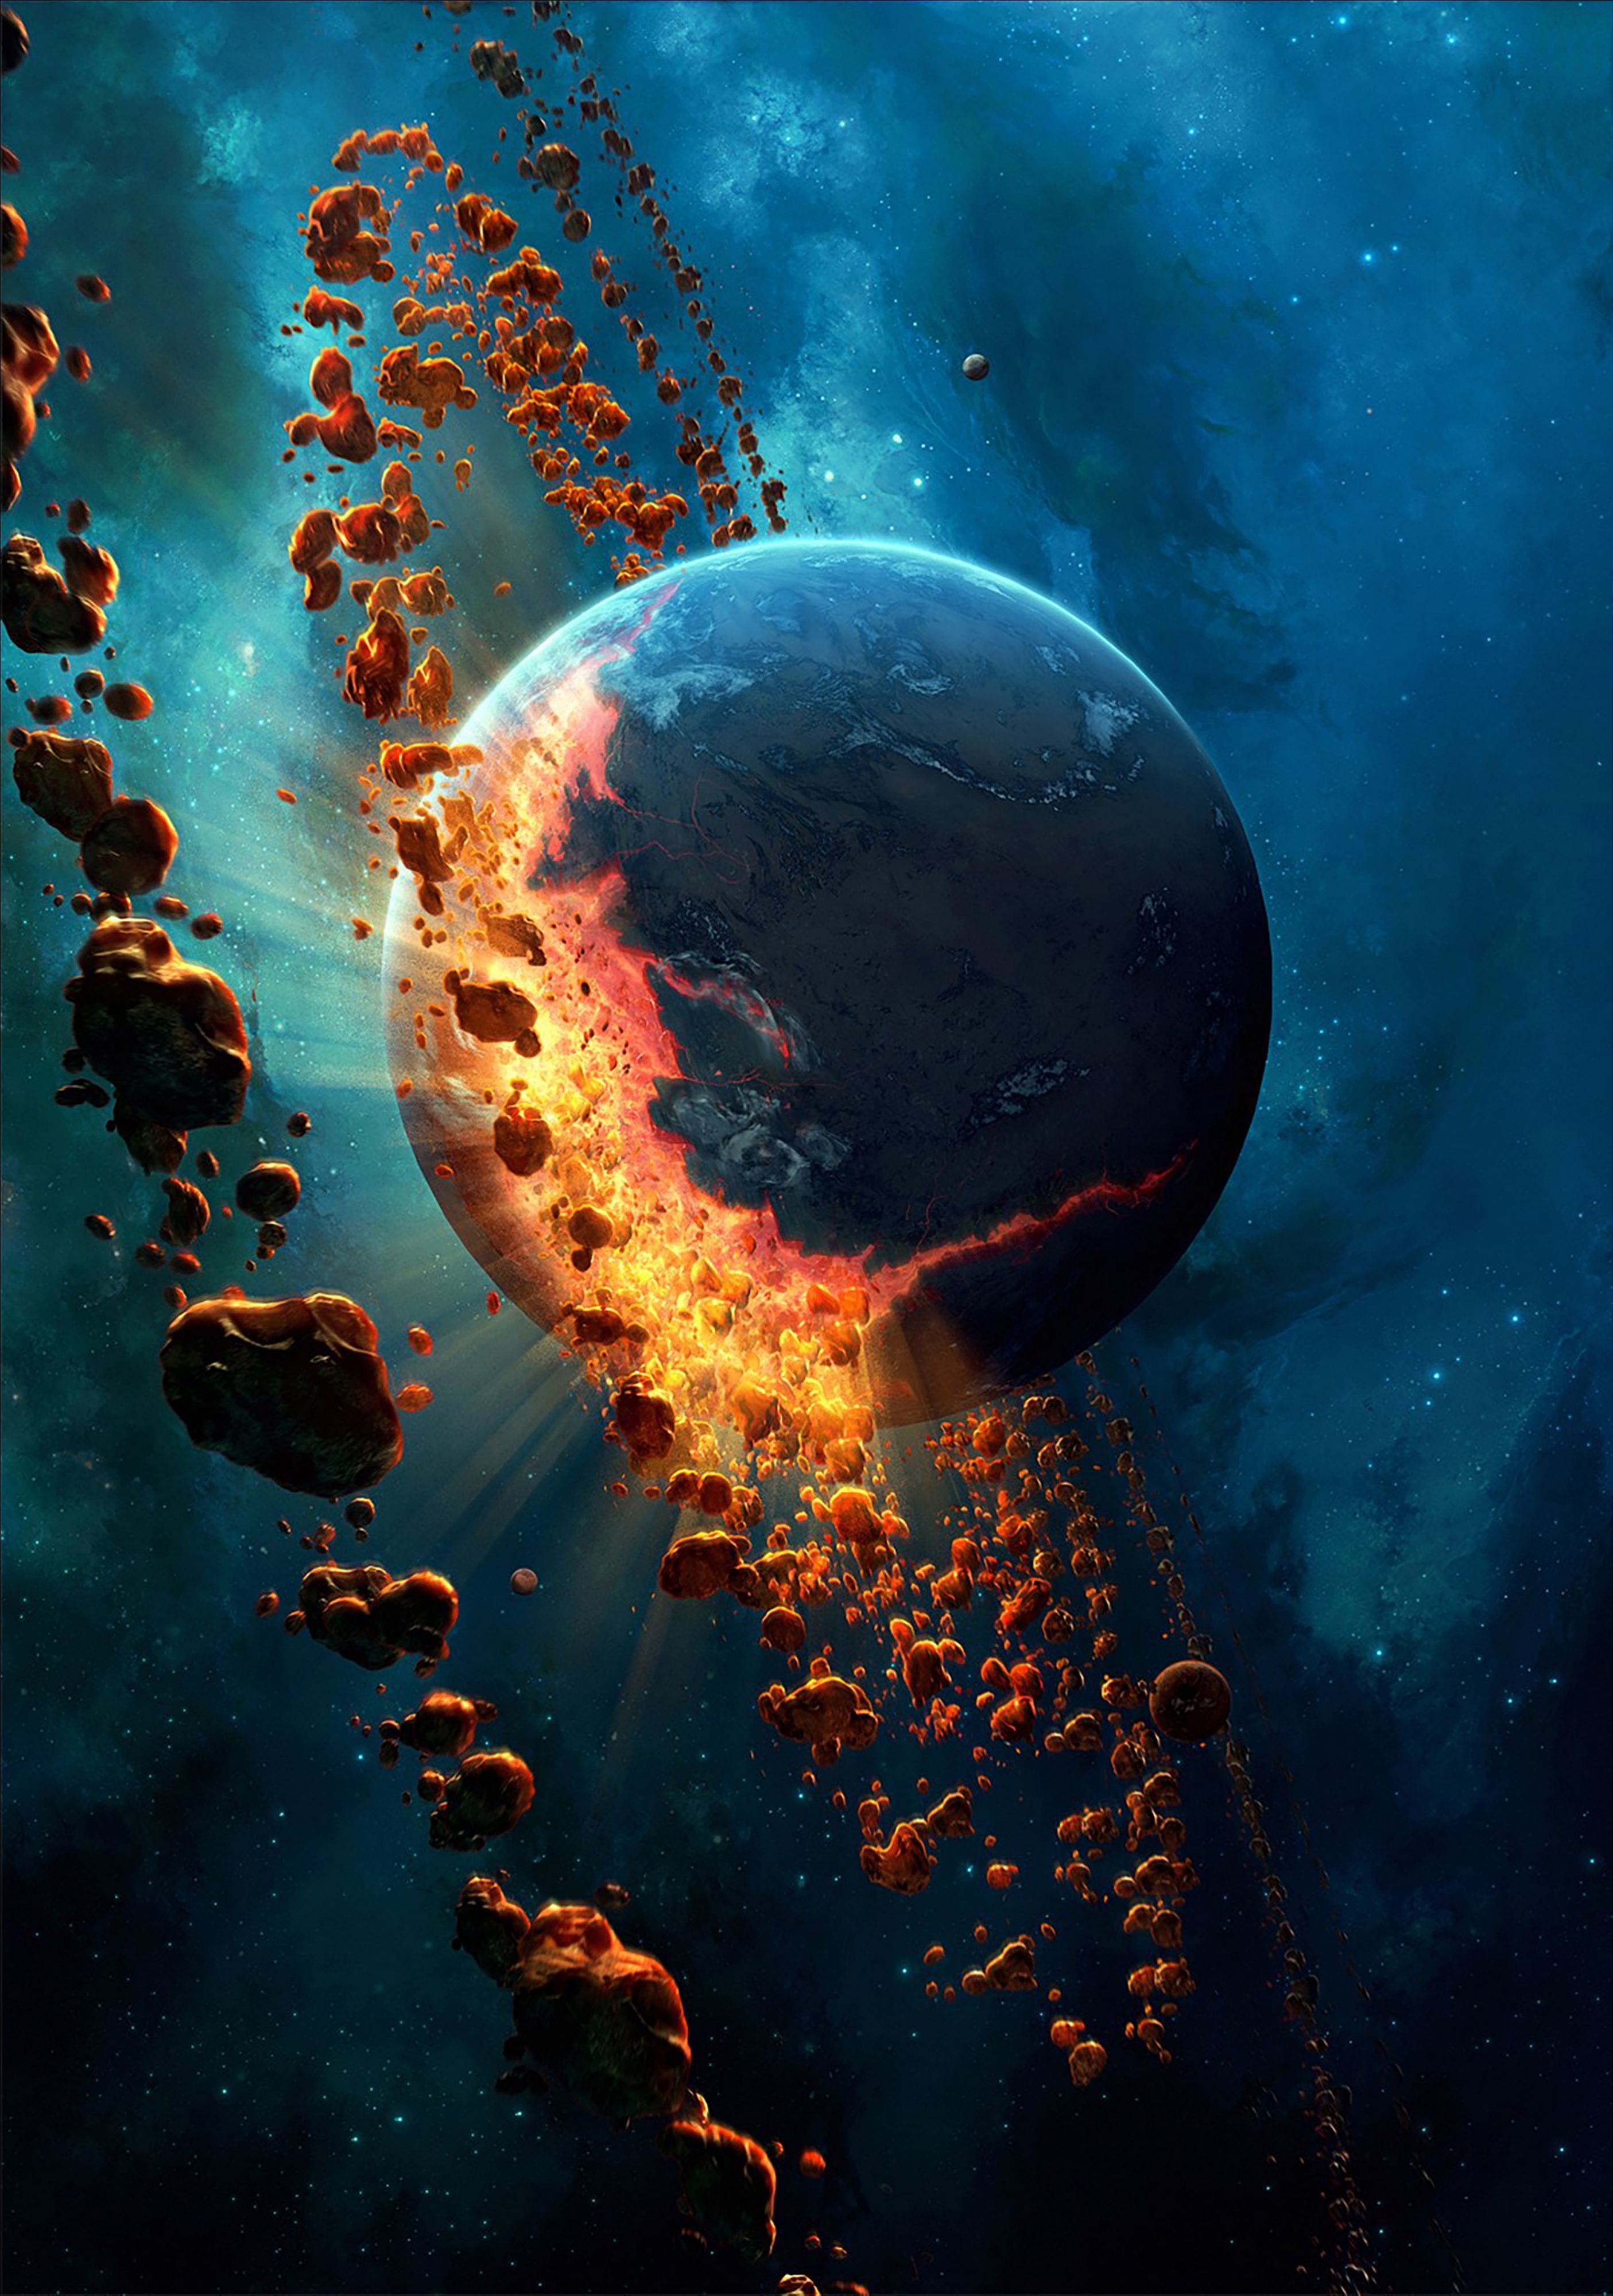 Image: Planet, space, destruction, collision, matter